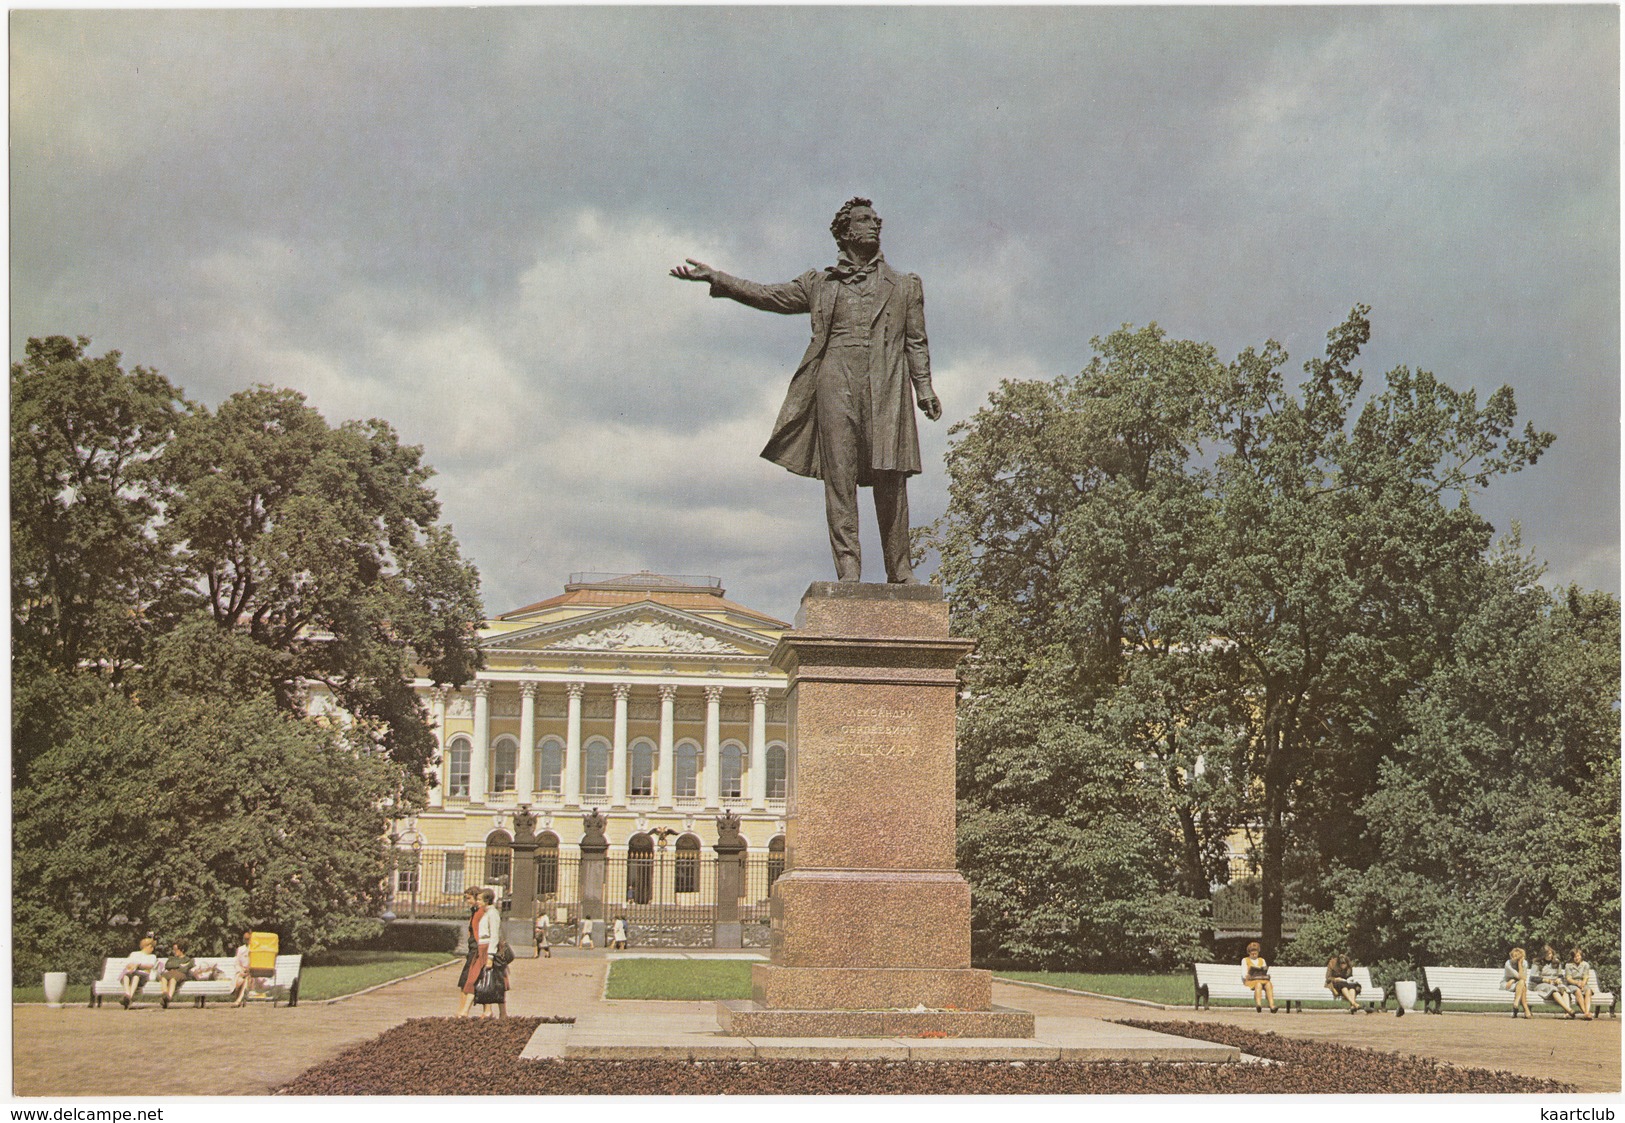 Leningrad: Monument à Pouchkine,Place Des Arts - Monument To Pushkin,Arts Square - (Jumbo Sized Postcard; 25 Cm X 17 Cm) - Rusland